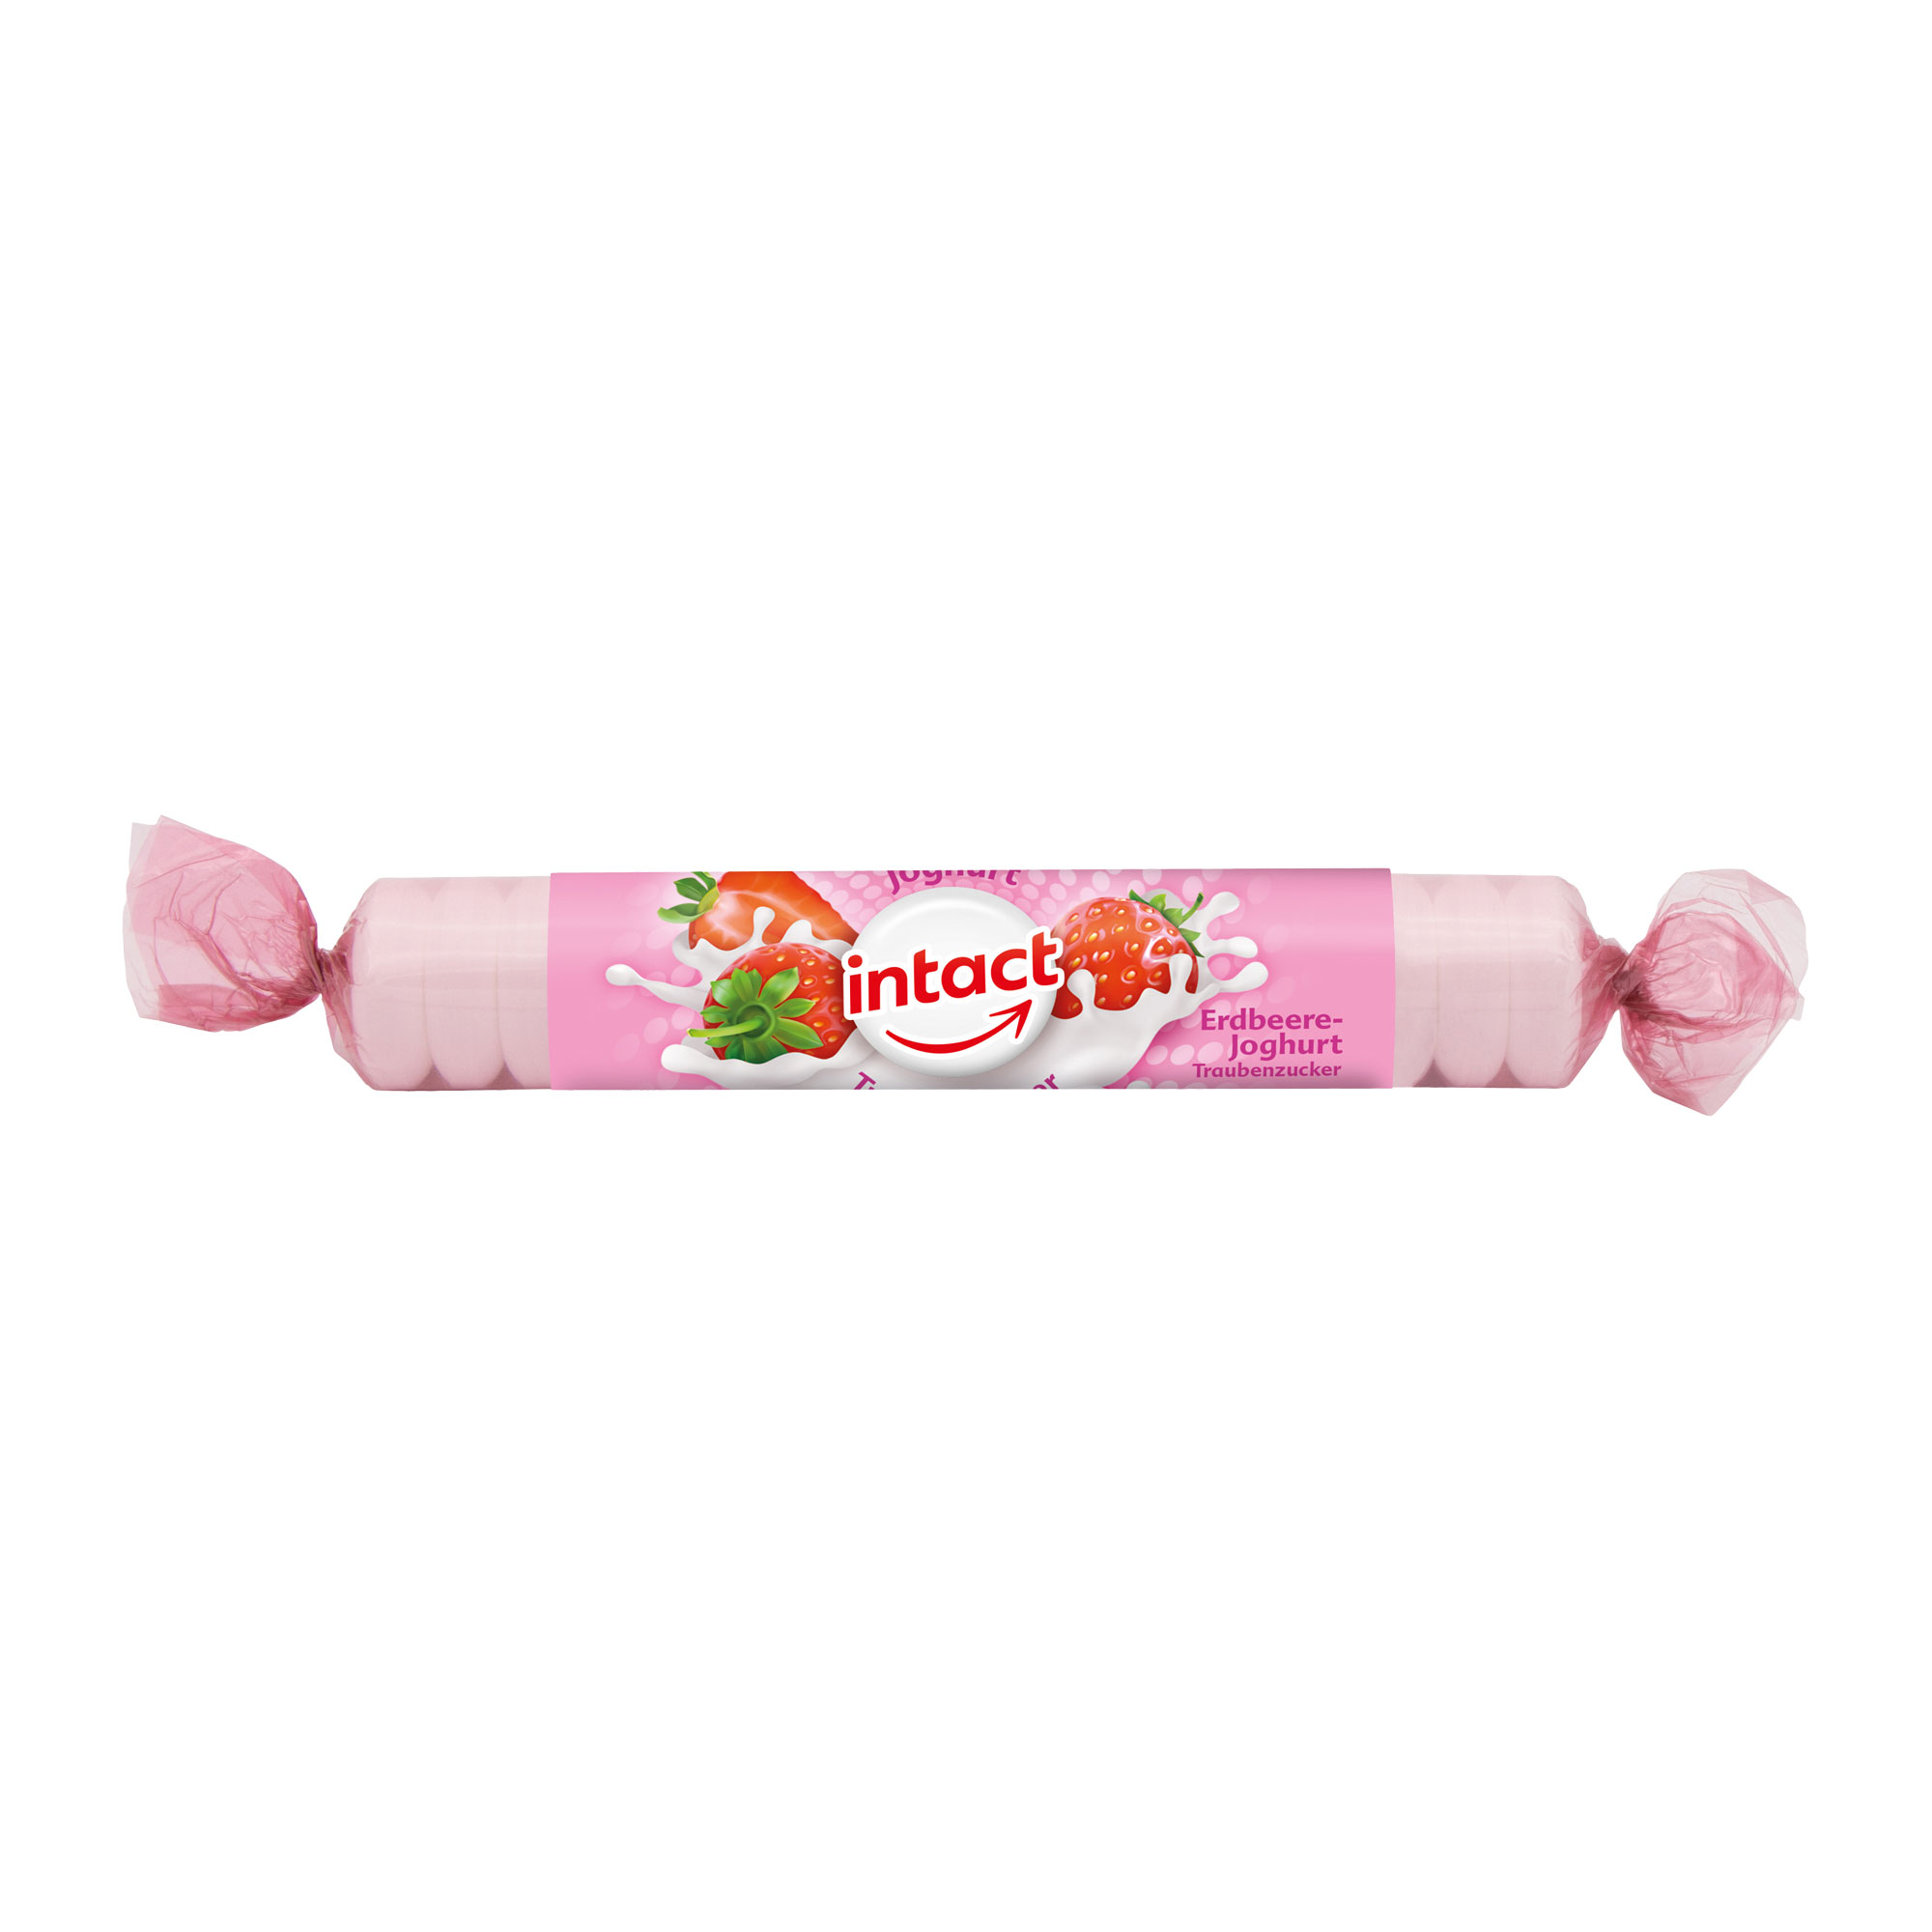 Traubenzuckerbonbons mit Erdbeer-Joghurt-Geschmack.